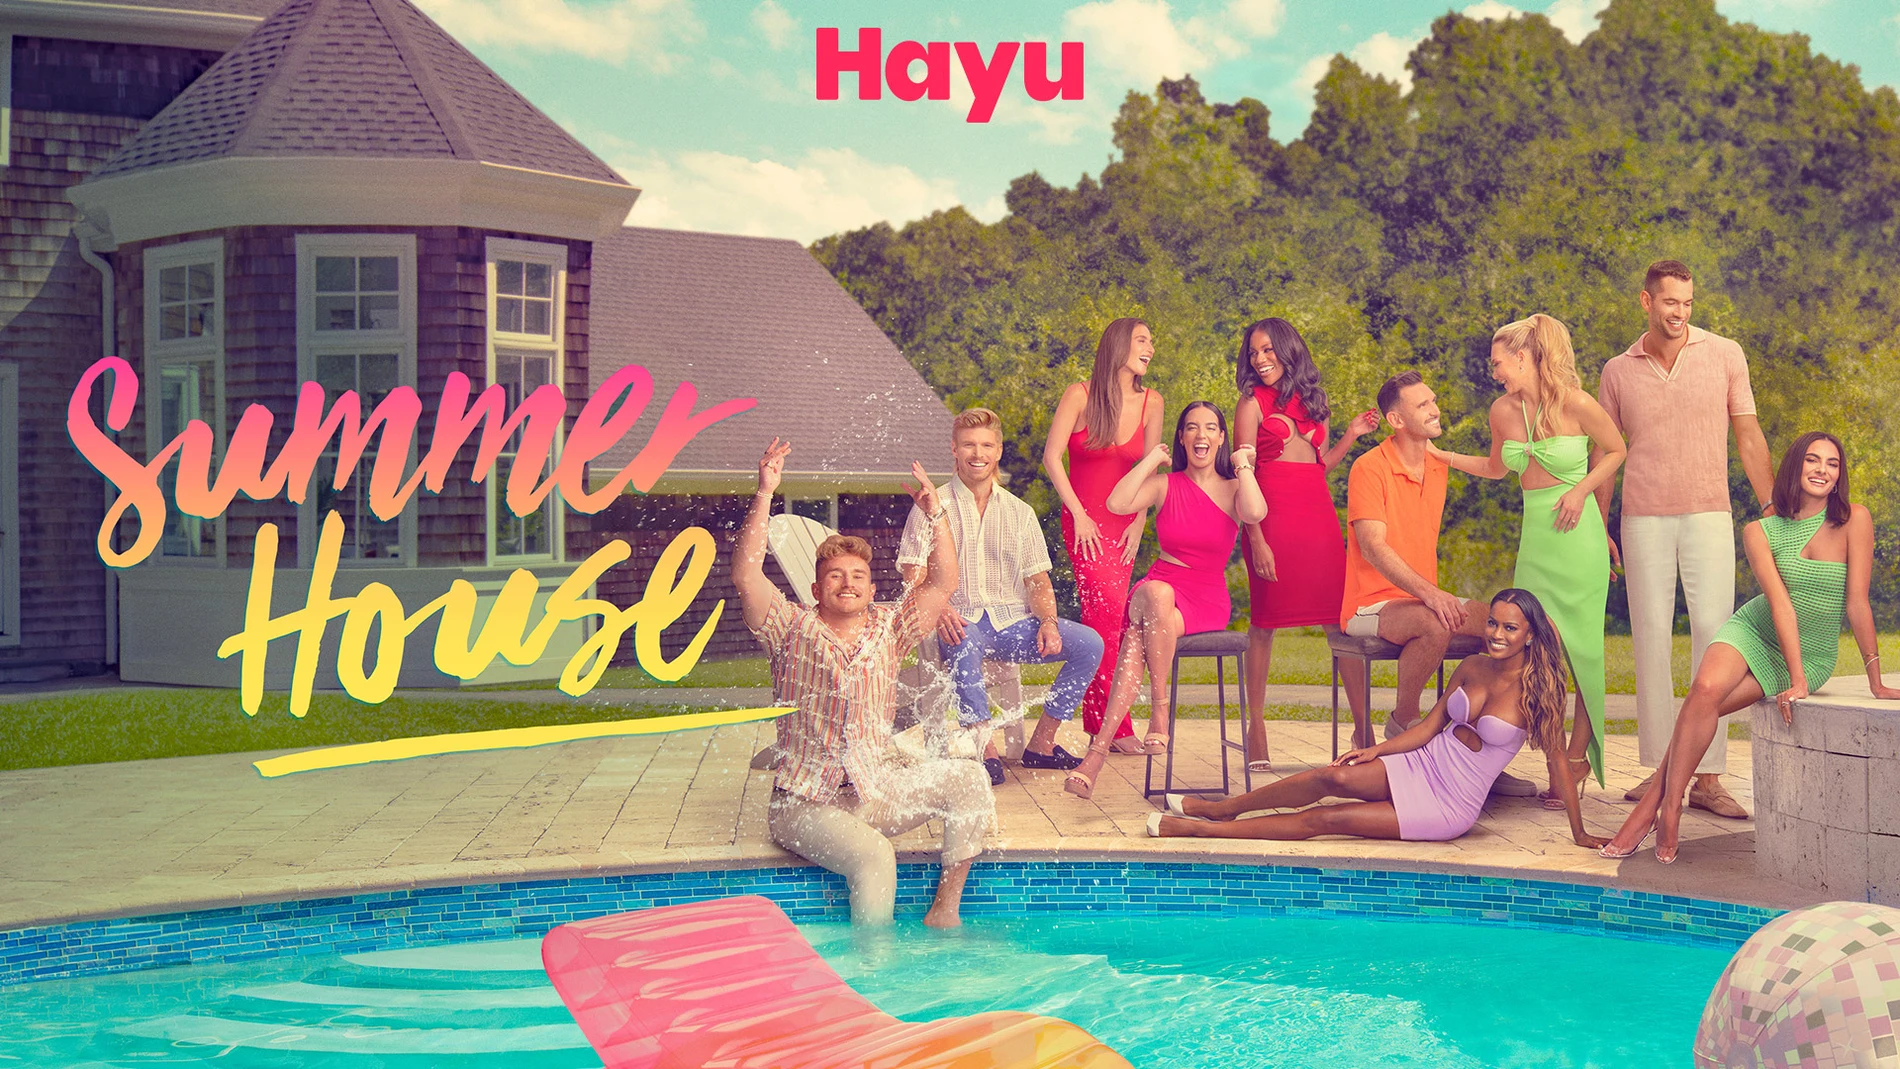 La octava temporada "Summer House" llega más candente que nunca